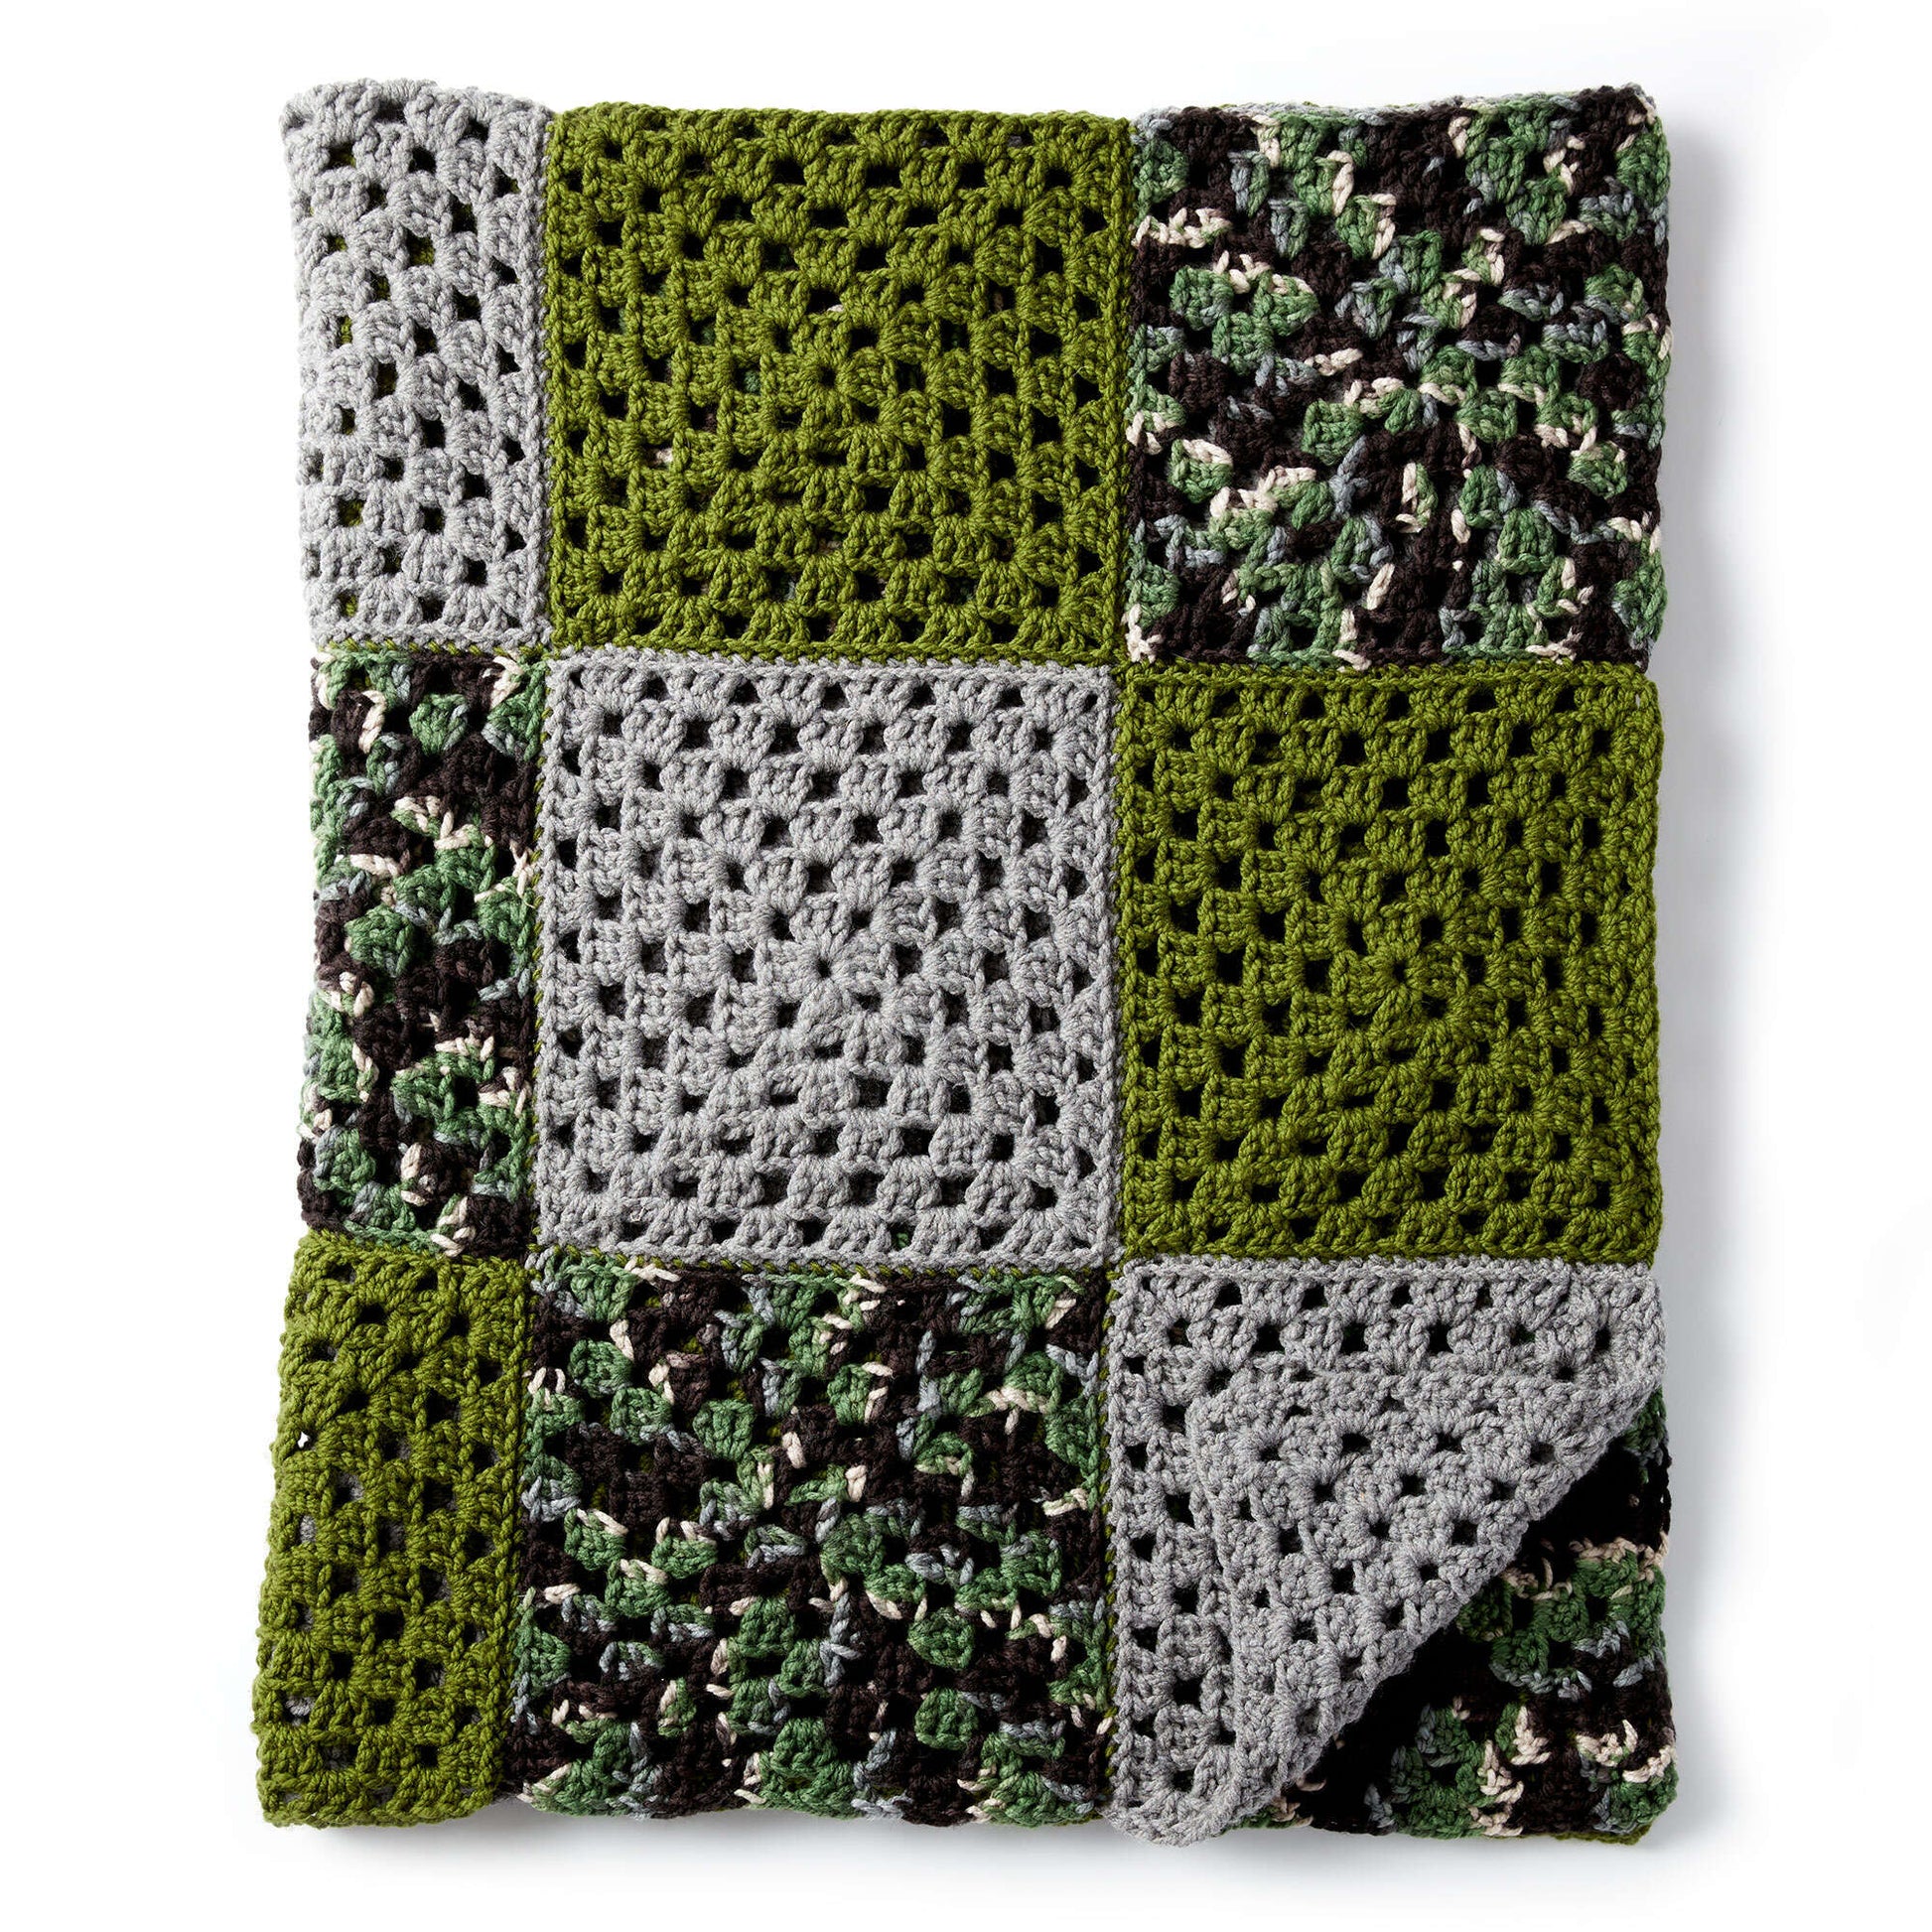 Free Bernat How To Crochet A Blanket Pattern